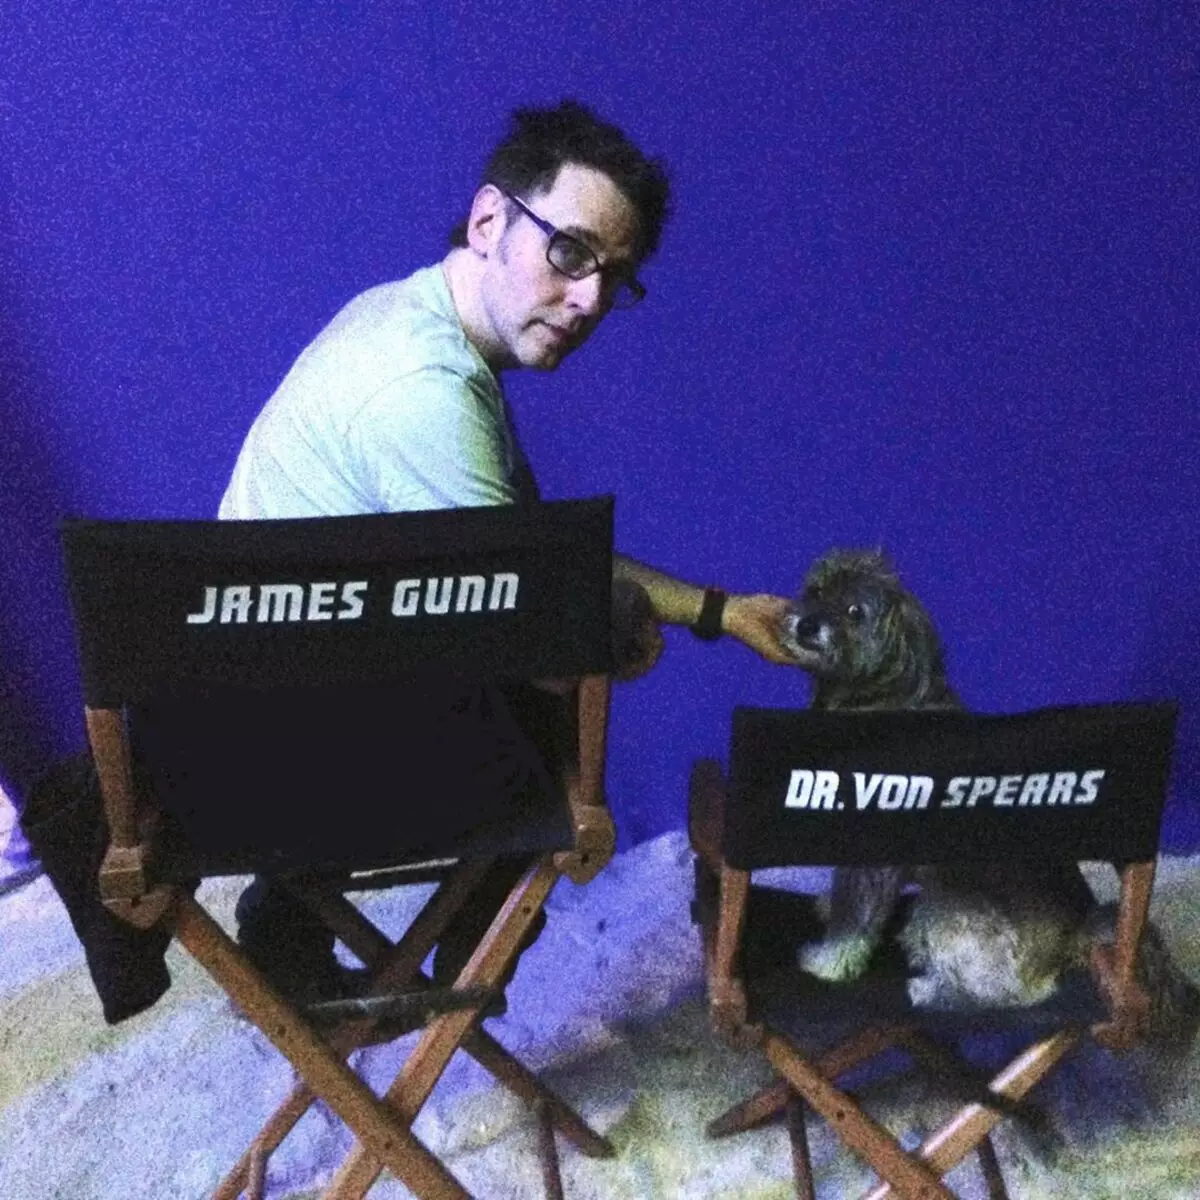 លោក James Gunn បានបង្ហាញពីអាថ៌កំបាំងគួរឱ្យចាប់អារម្មណ៍នៃ 